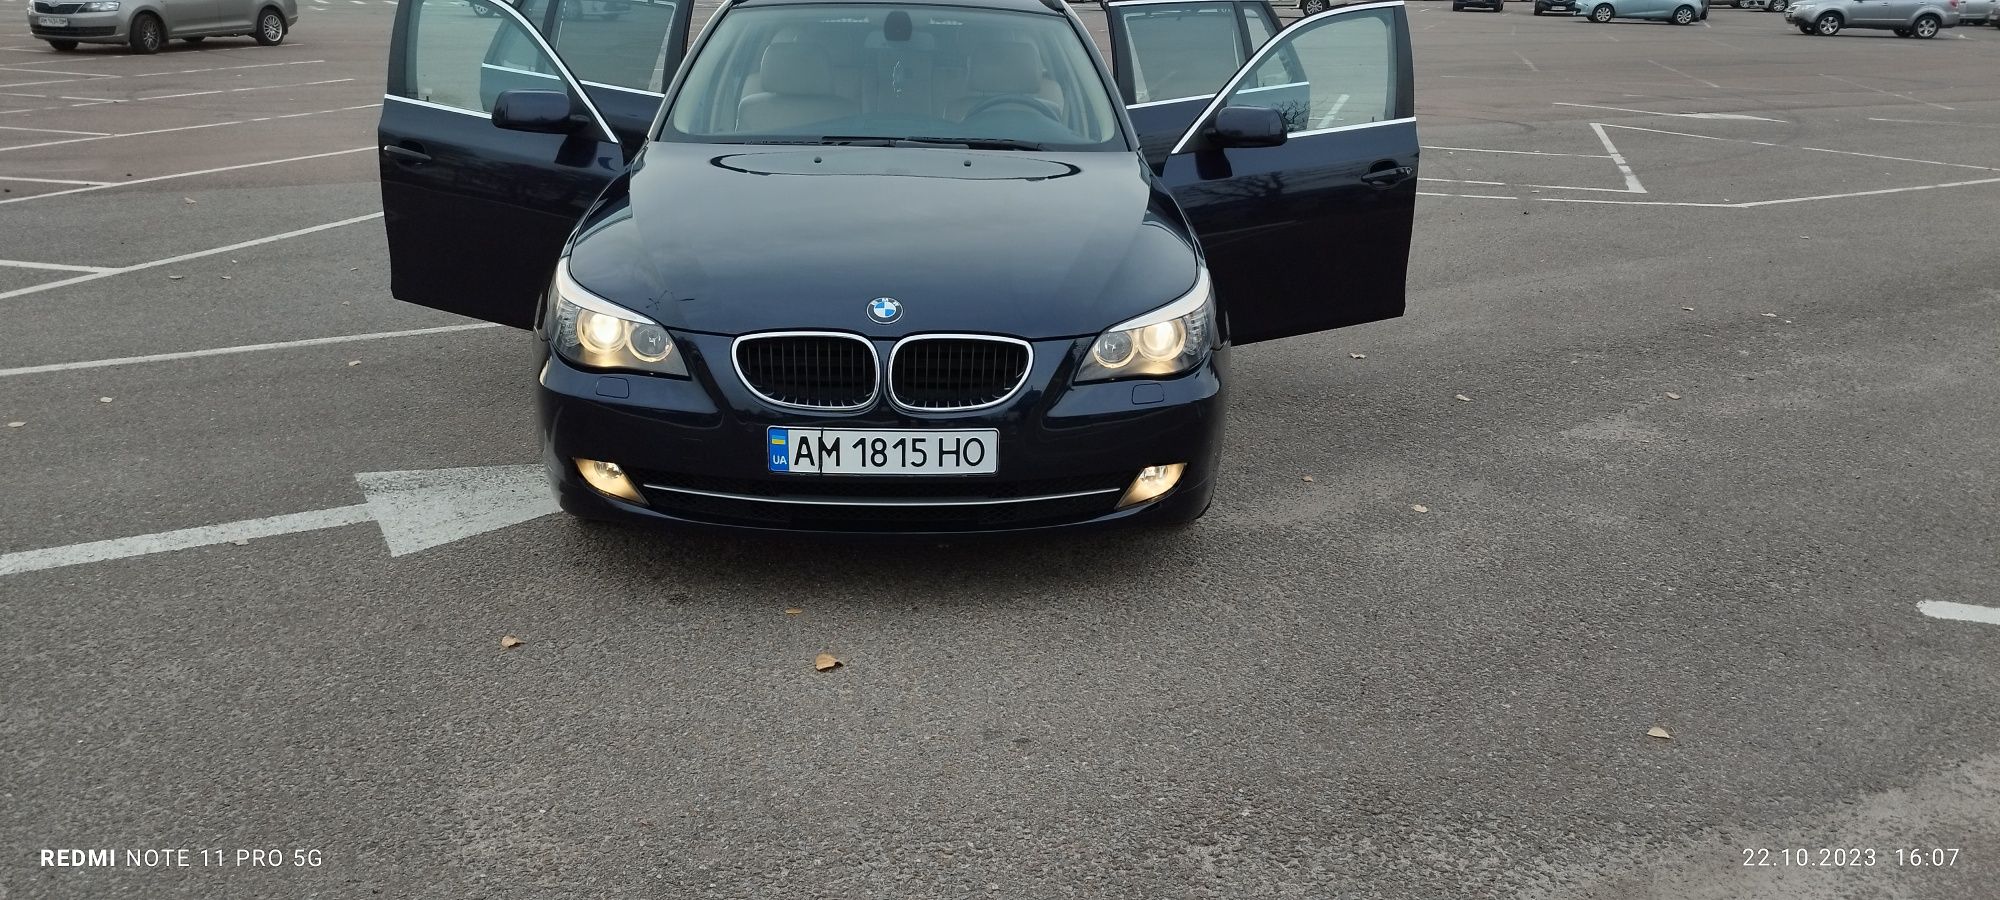 Продам BMW 520, 2008року, бензин, механіка, свіжопригнана